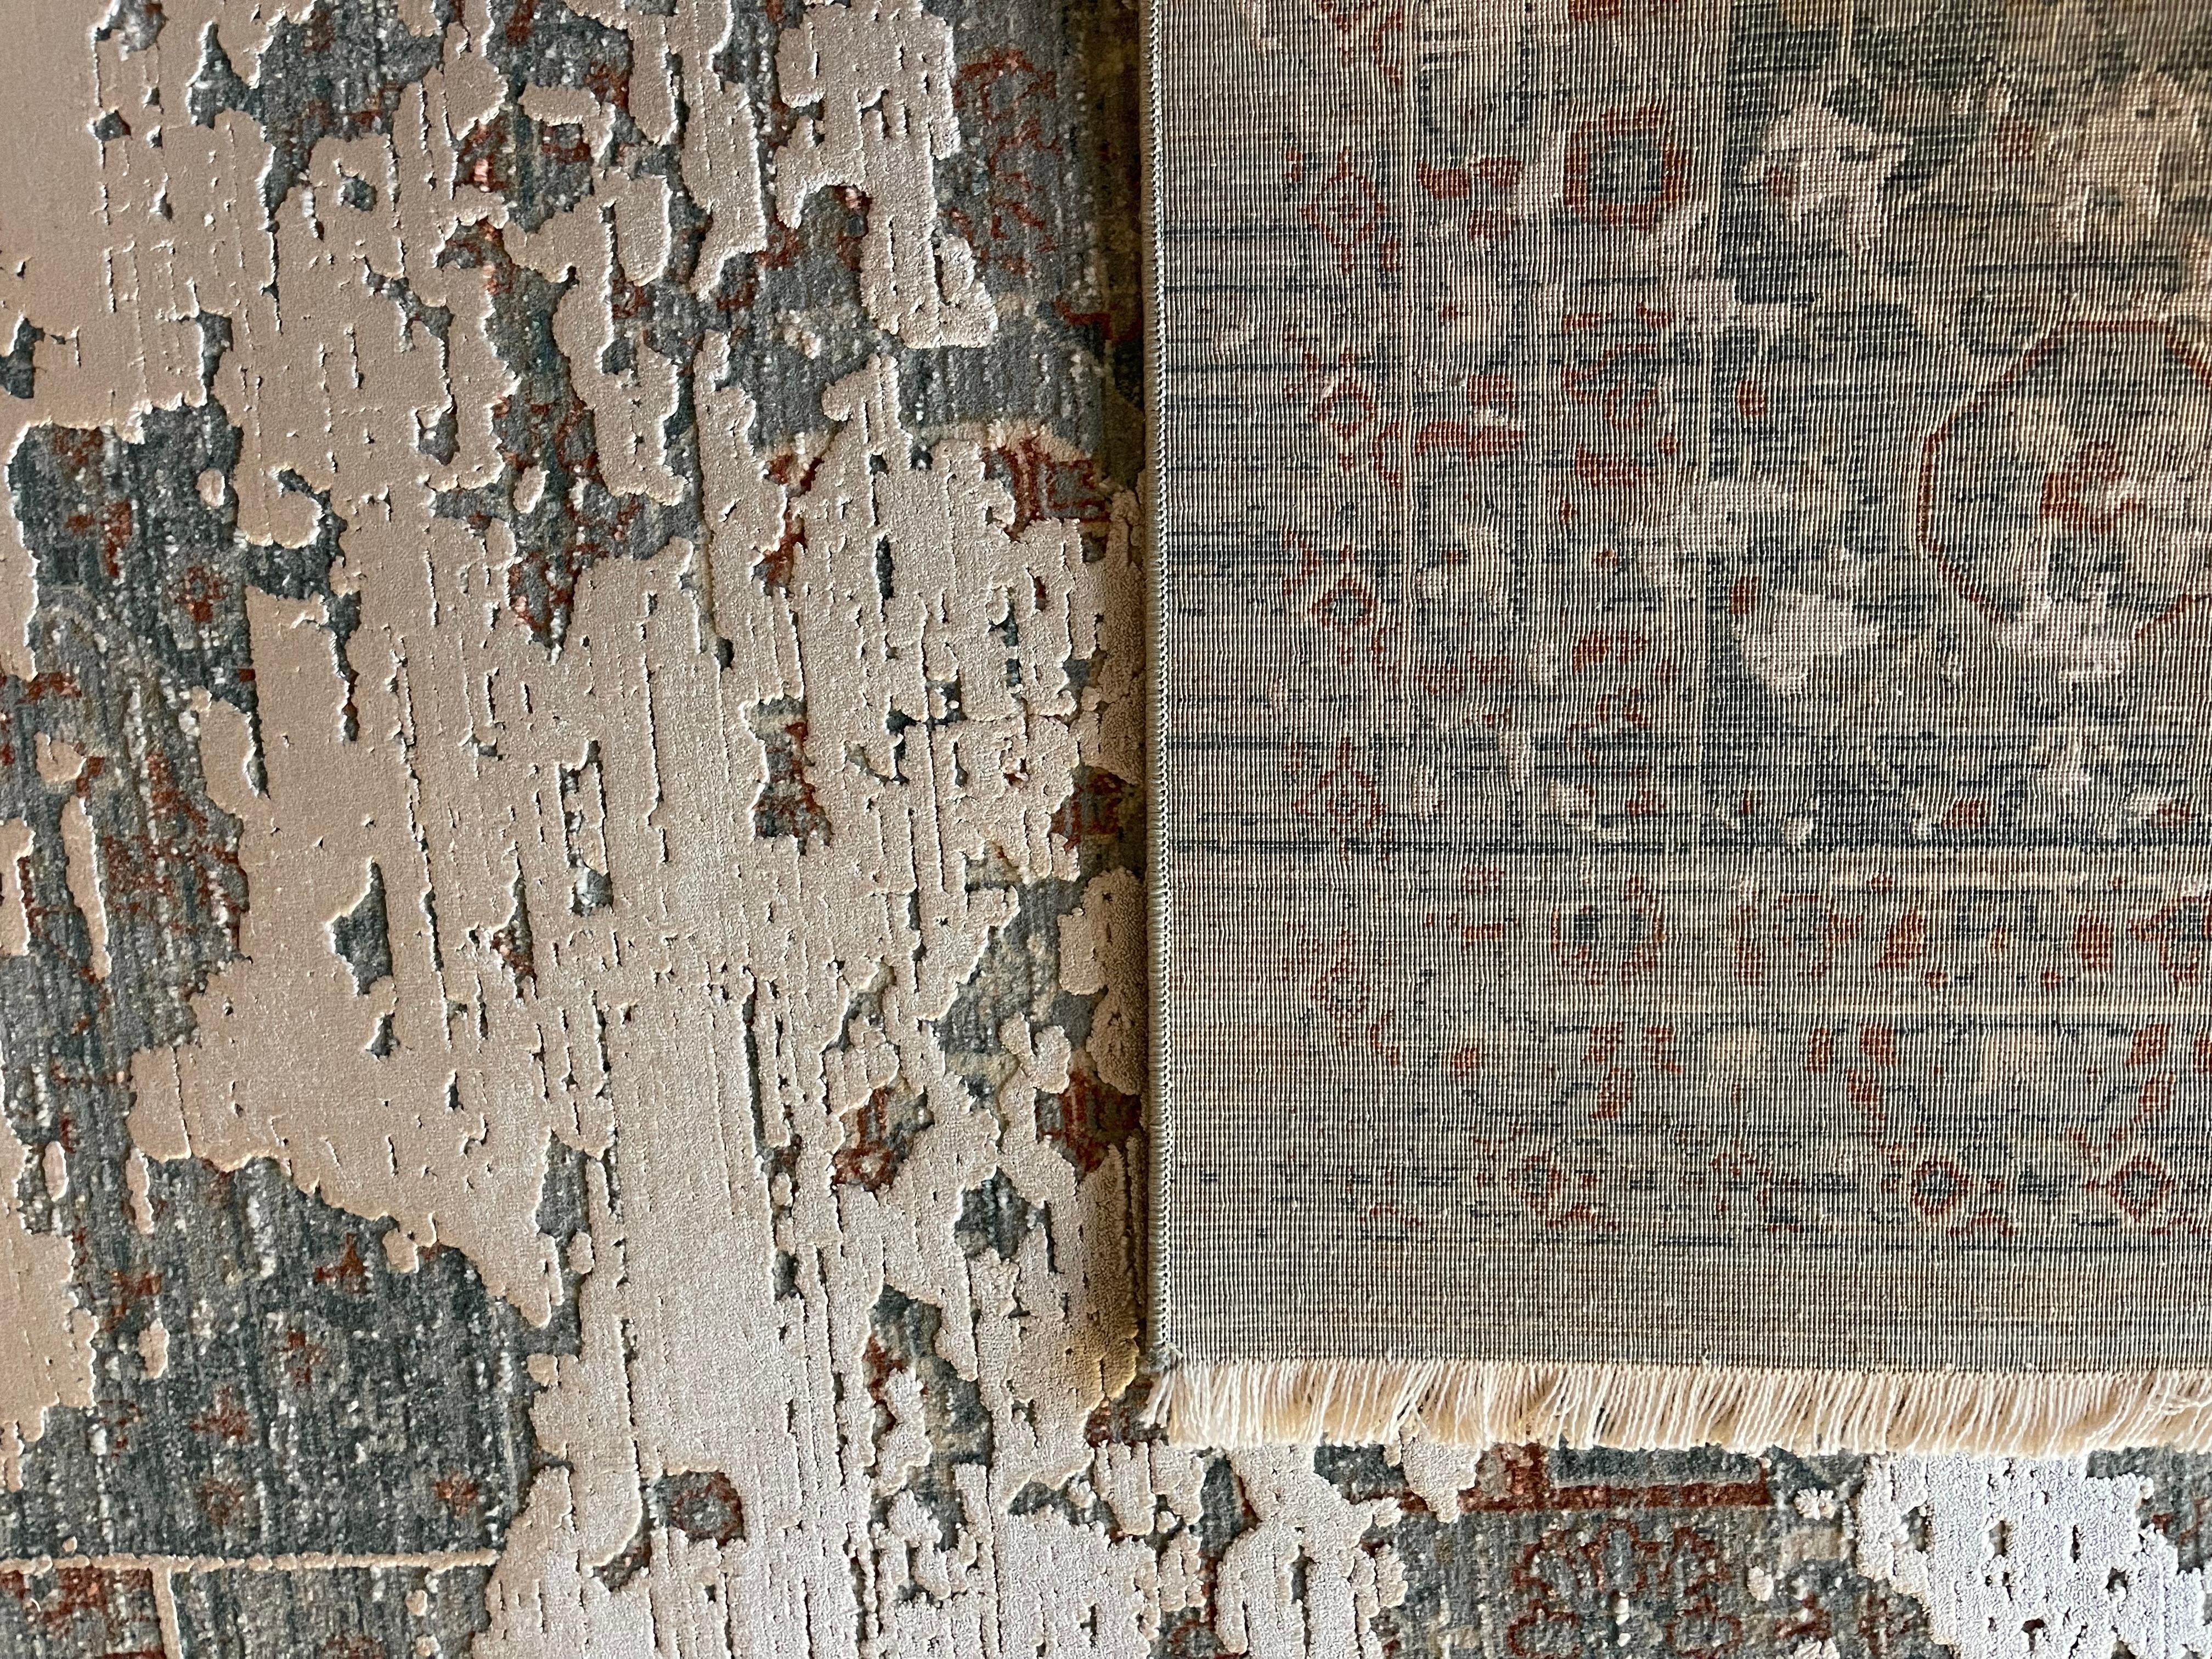 Issu de notre collection Masterloom, ce teppich moderne est fabriqué à partir de toile de chanvre, d'une qualité supérieure et d'un cuir de bambou. Le motif en relief confère au teppich une texture et une élégance extraordinaires. Le nombre élevé de